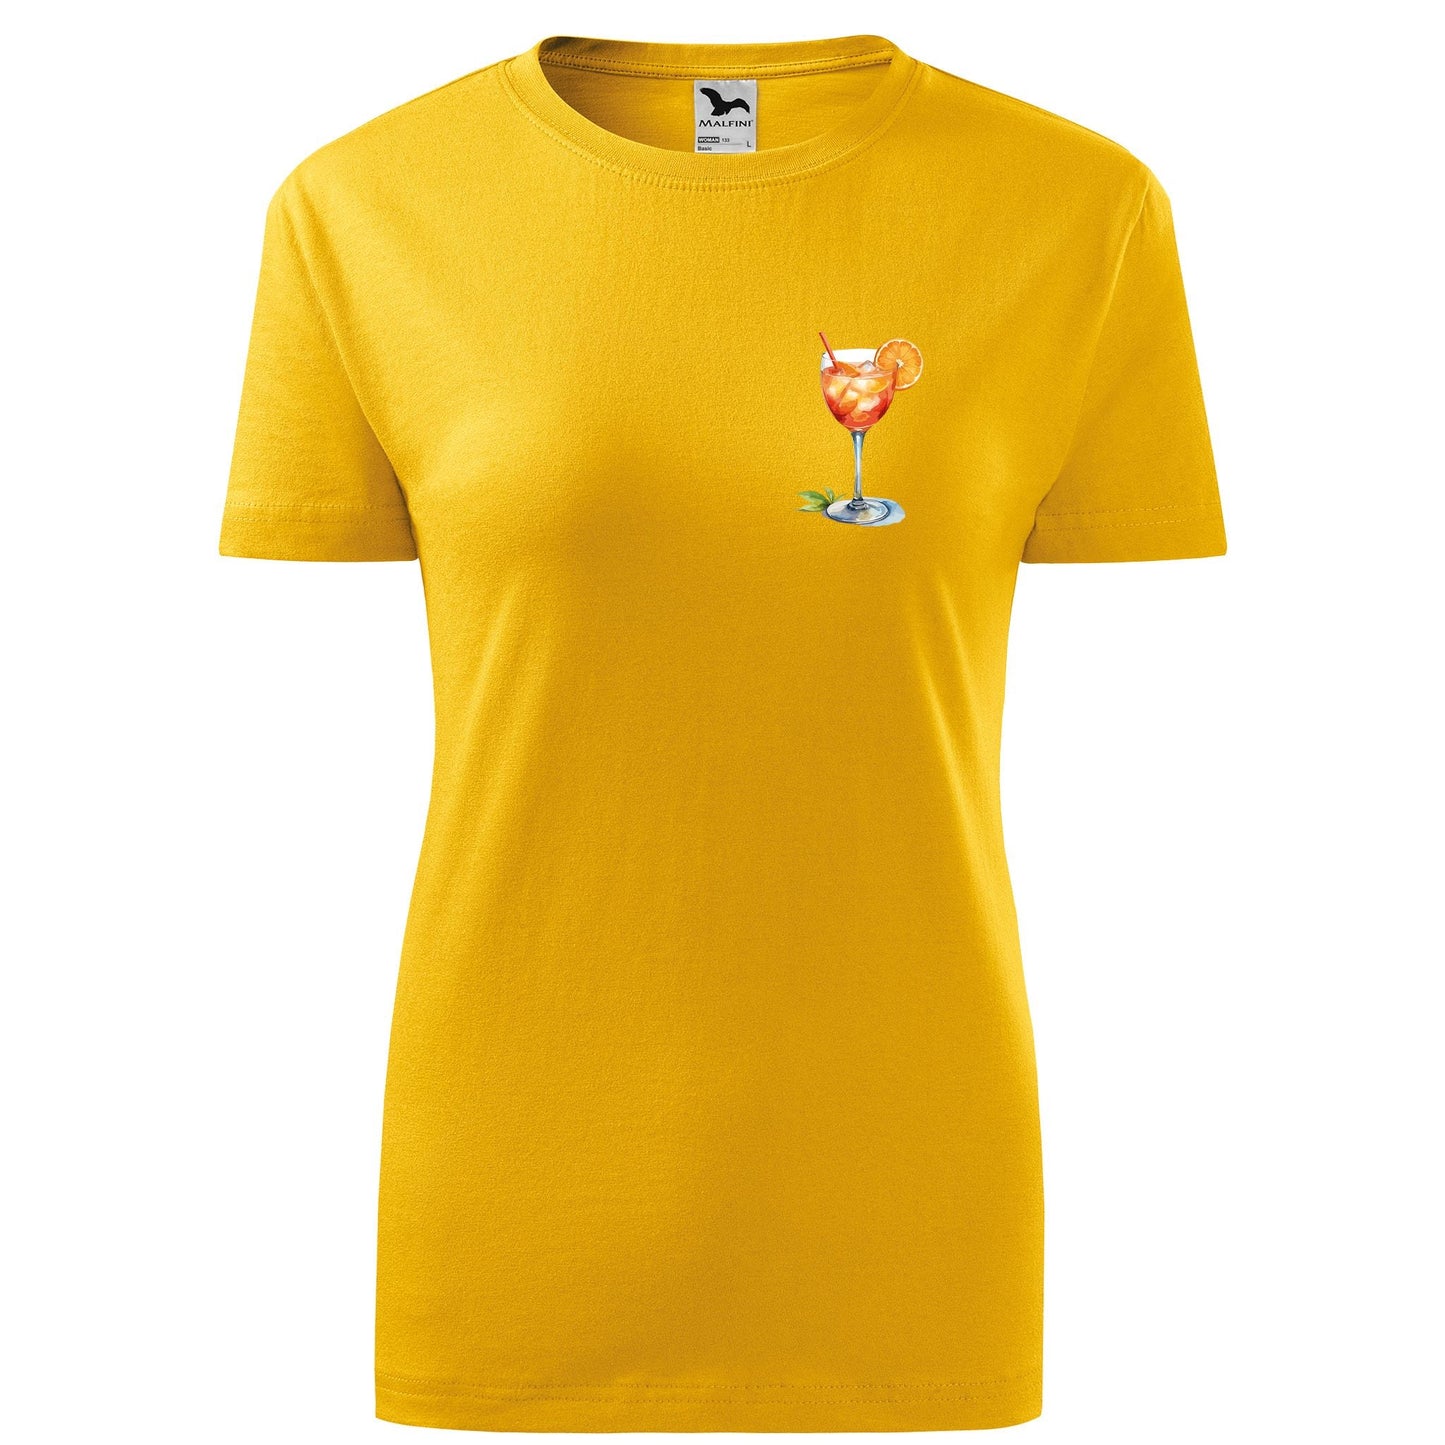 Spritzer t-shirt - rvdesignprint